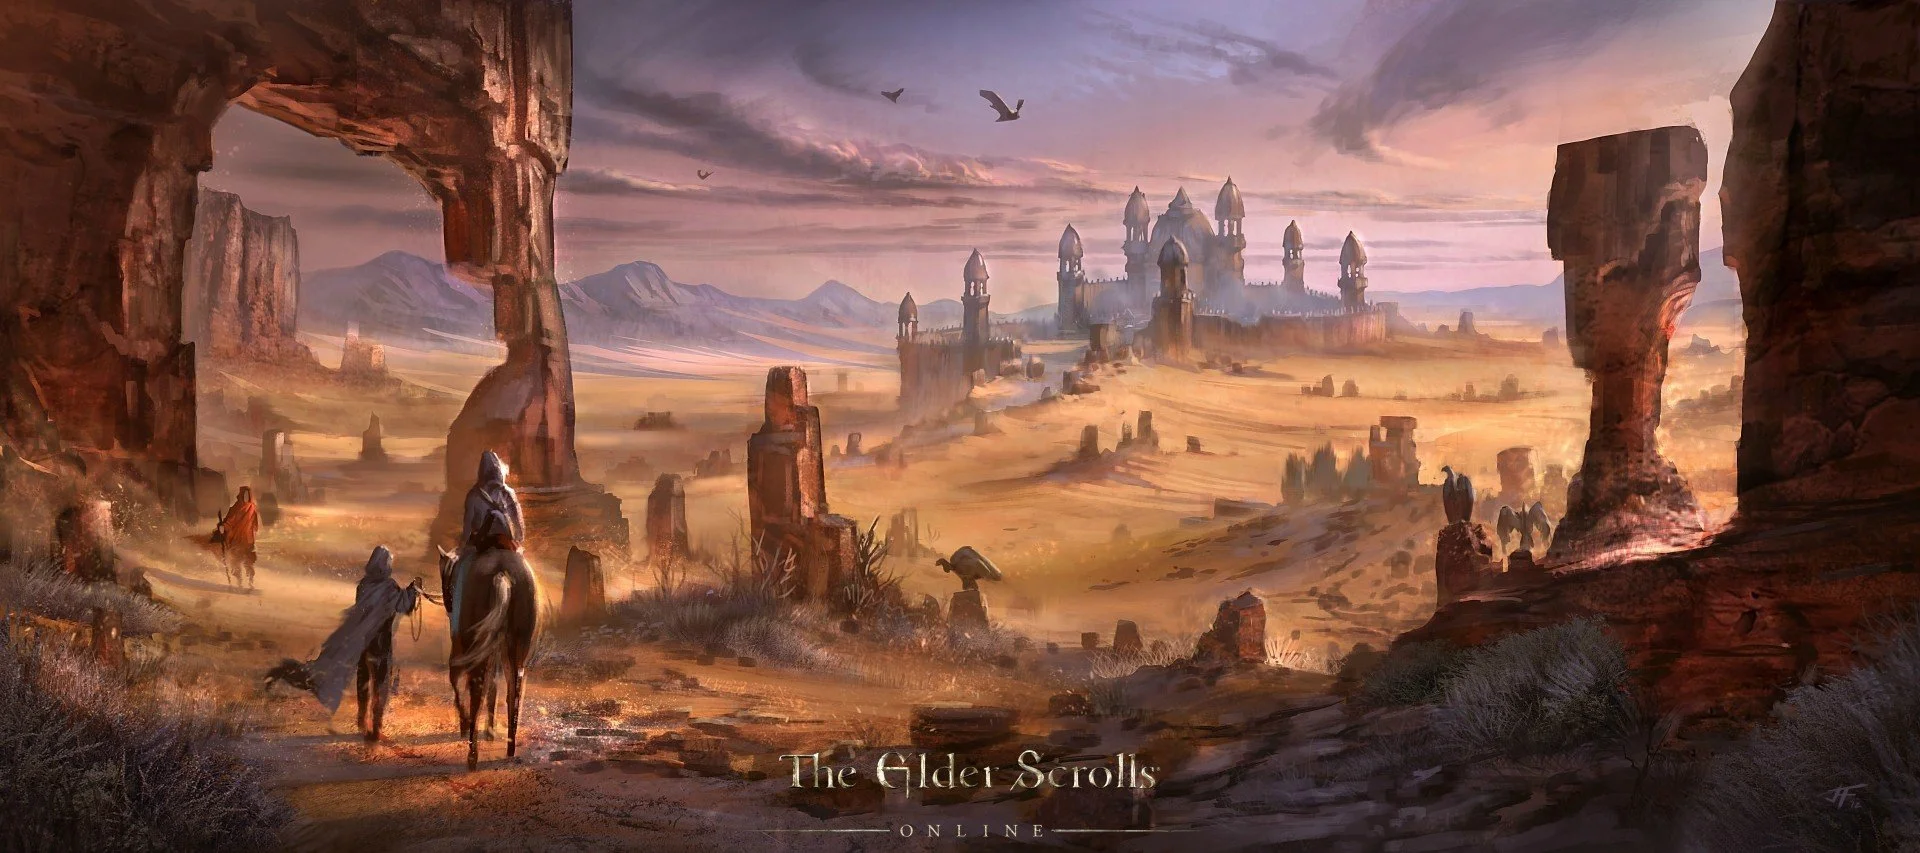 Приглашения в закрытую бету The Elder Scrolls Online разошлют в конце месяца - фото 1